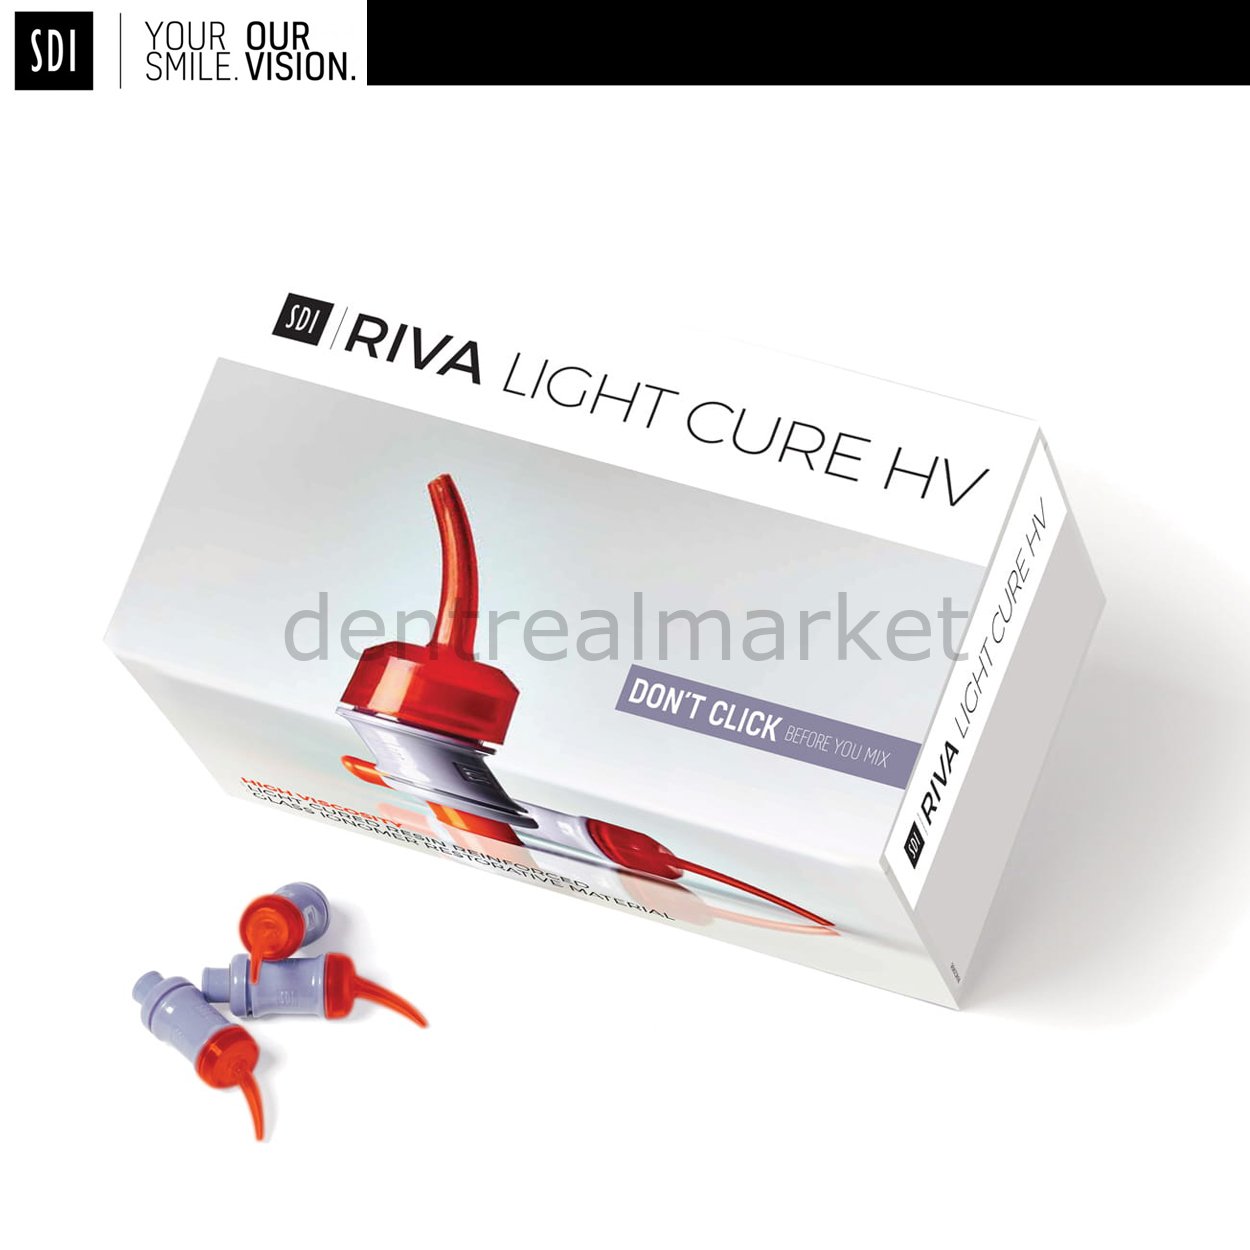 Riva Light Cure HV - Işıkla Sertleşen Cam ionomer Kapsül